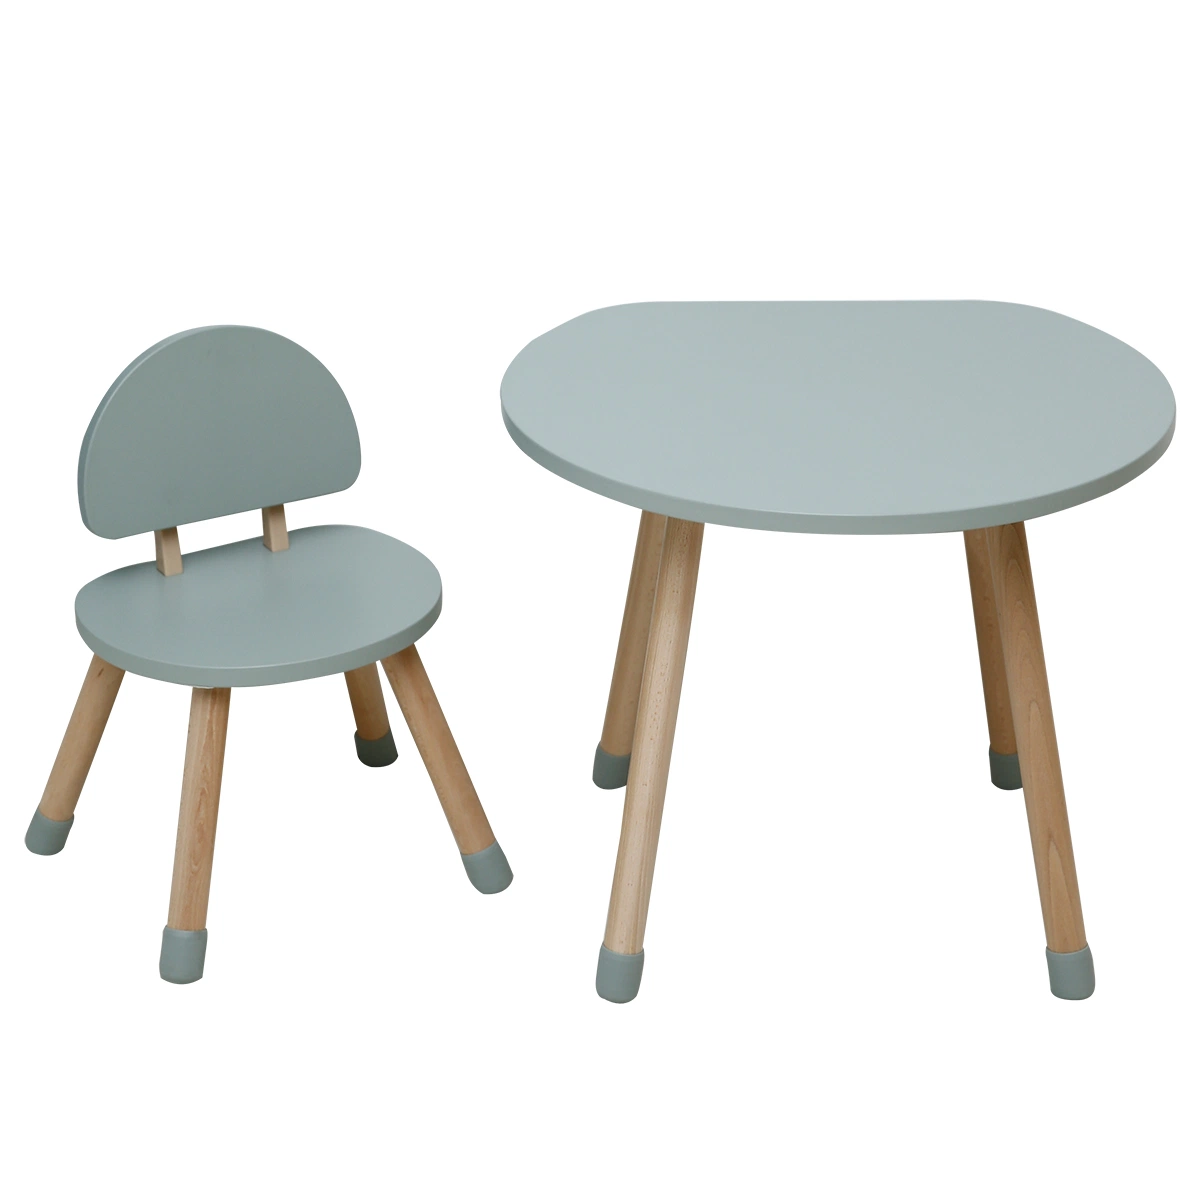 Новый стиль деревянные детей в форме гриба стол и стул набор детей дома школьной мебели